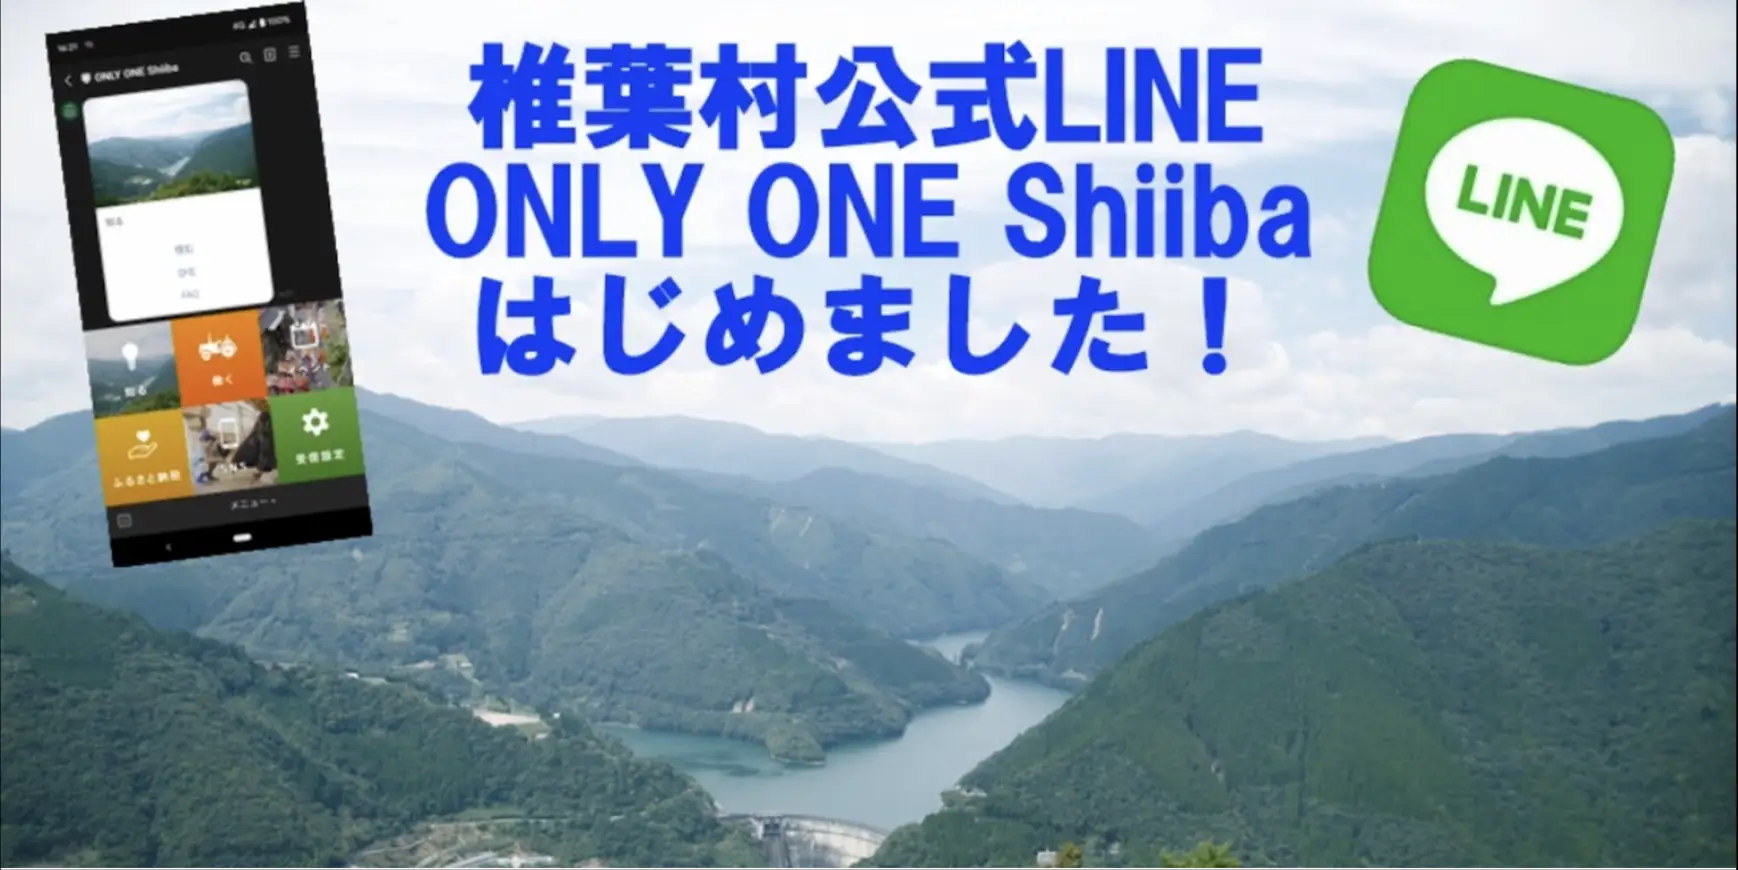 宮崎県椎葉村が、移住定住専用のLINE公式アカウント「ONLY ONE Shiiba」をリリース[ニュース]